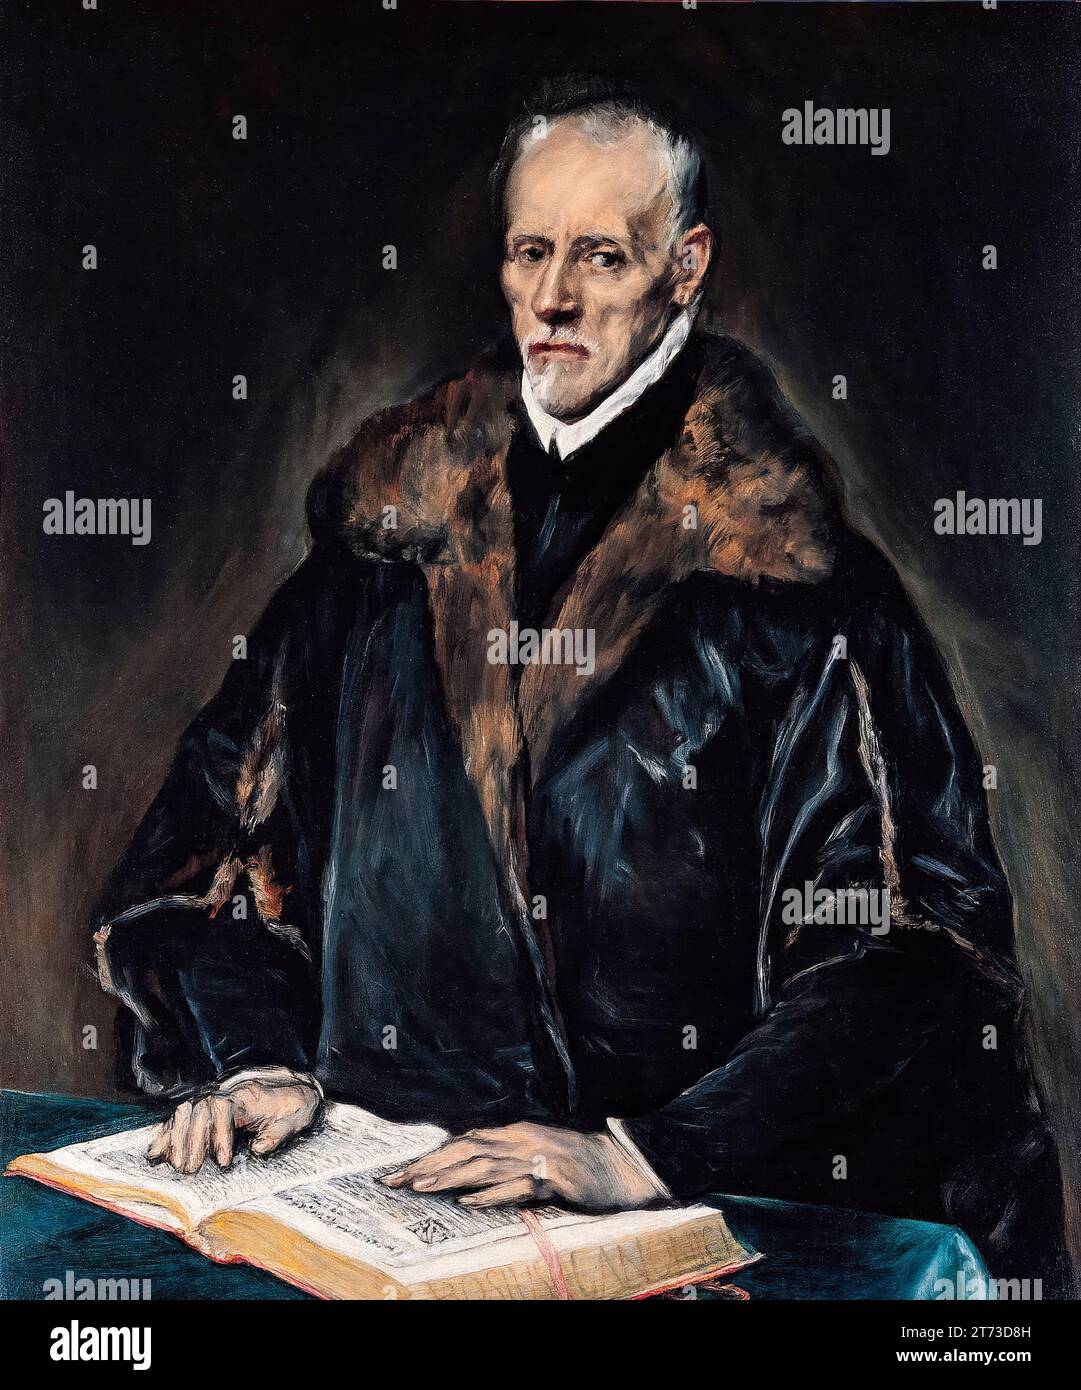 Francisco de Pisa (1534-1616), storico e scrittore spagnolo, ritratto dipinto ad olio su tela di El Greco, 1610-1614 Foto Stock